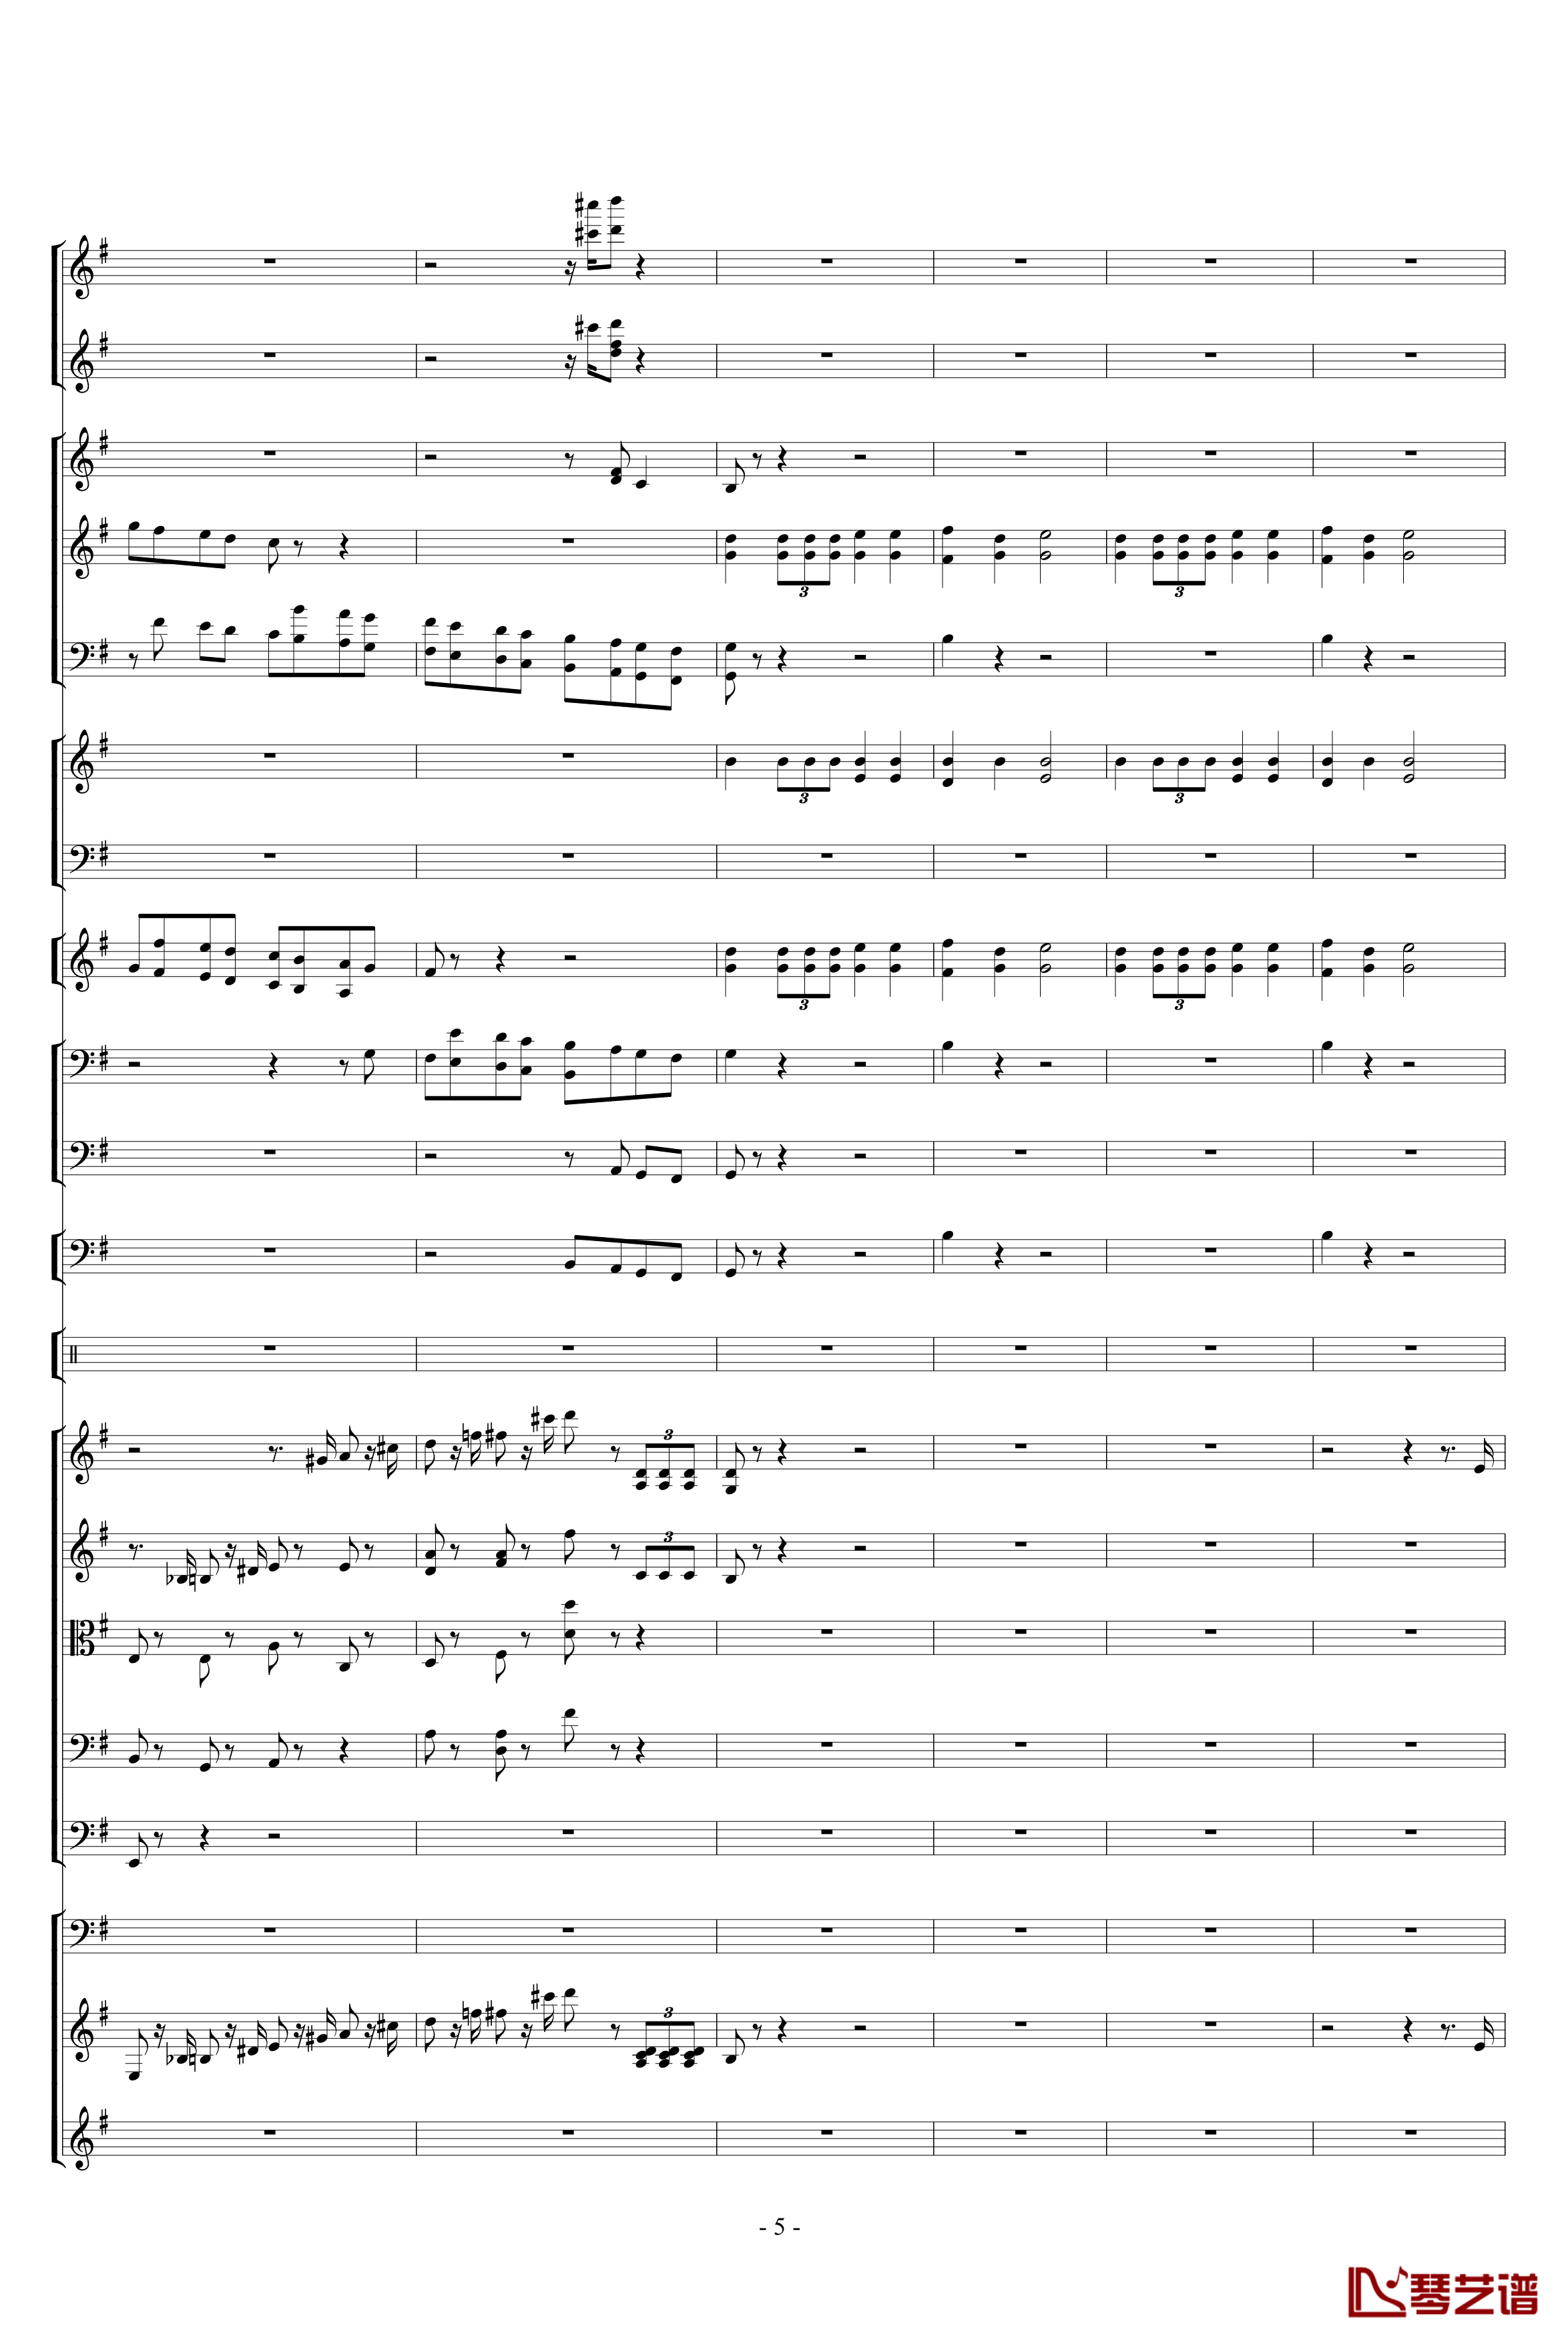 胡桃夹子组曲之进行曲钢琴谱-柴科夫斯基-Peter Ilyich Tchaikovsky5